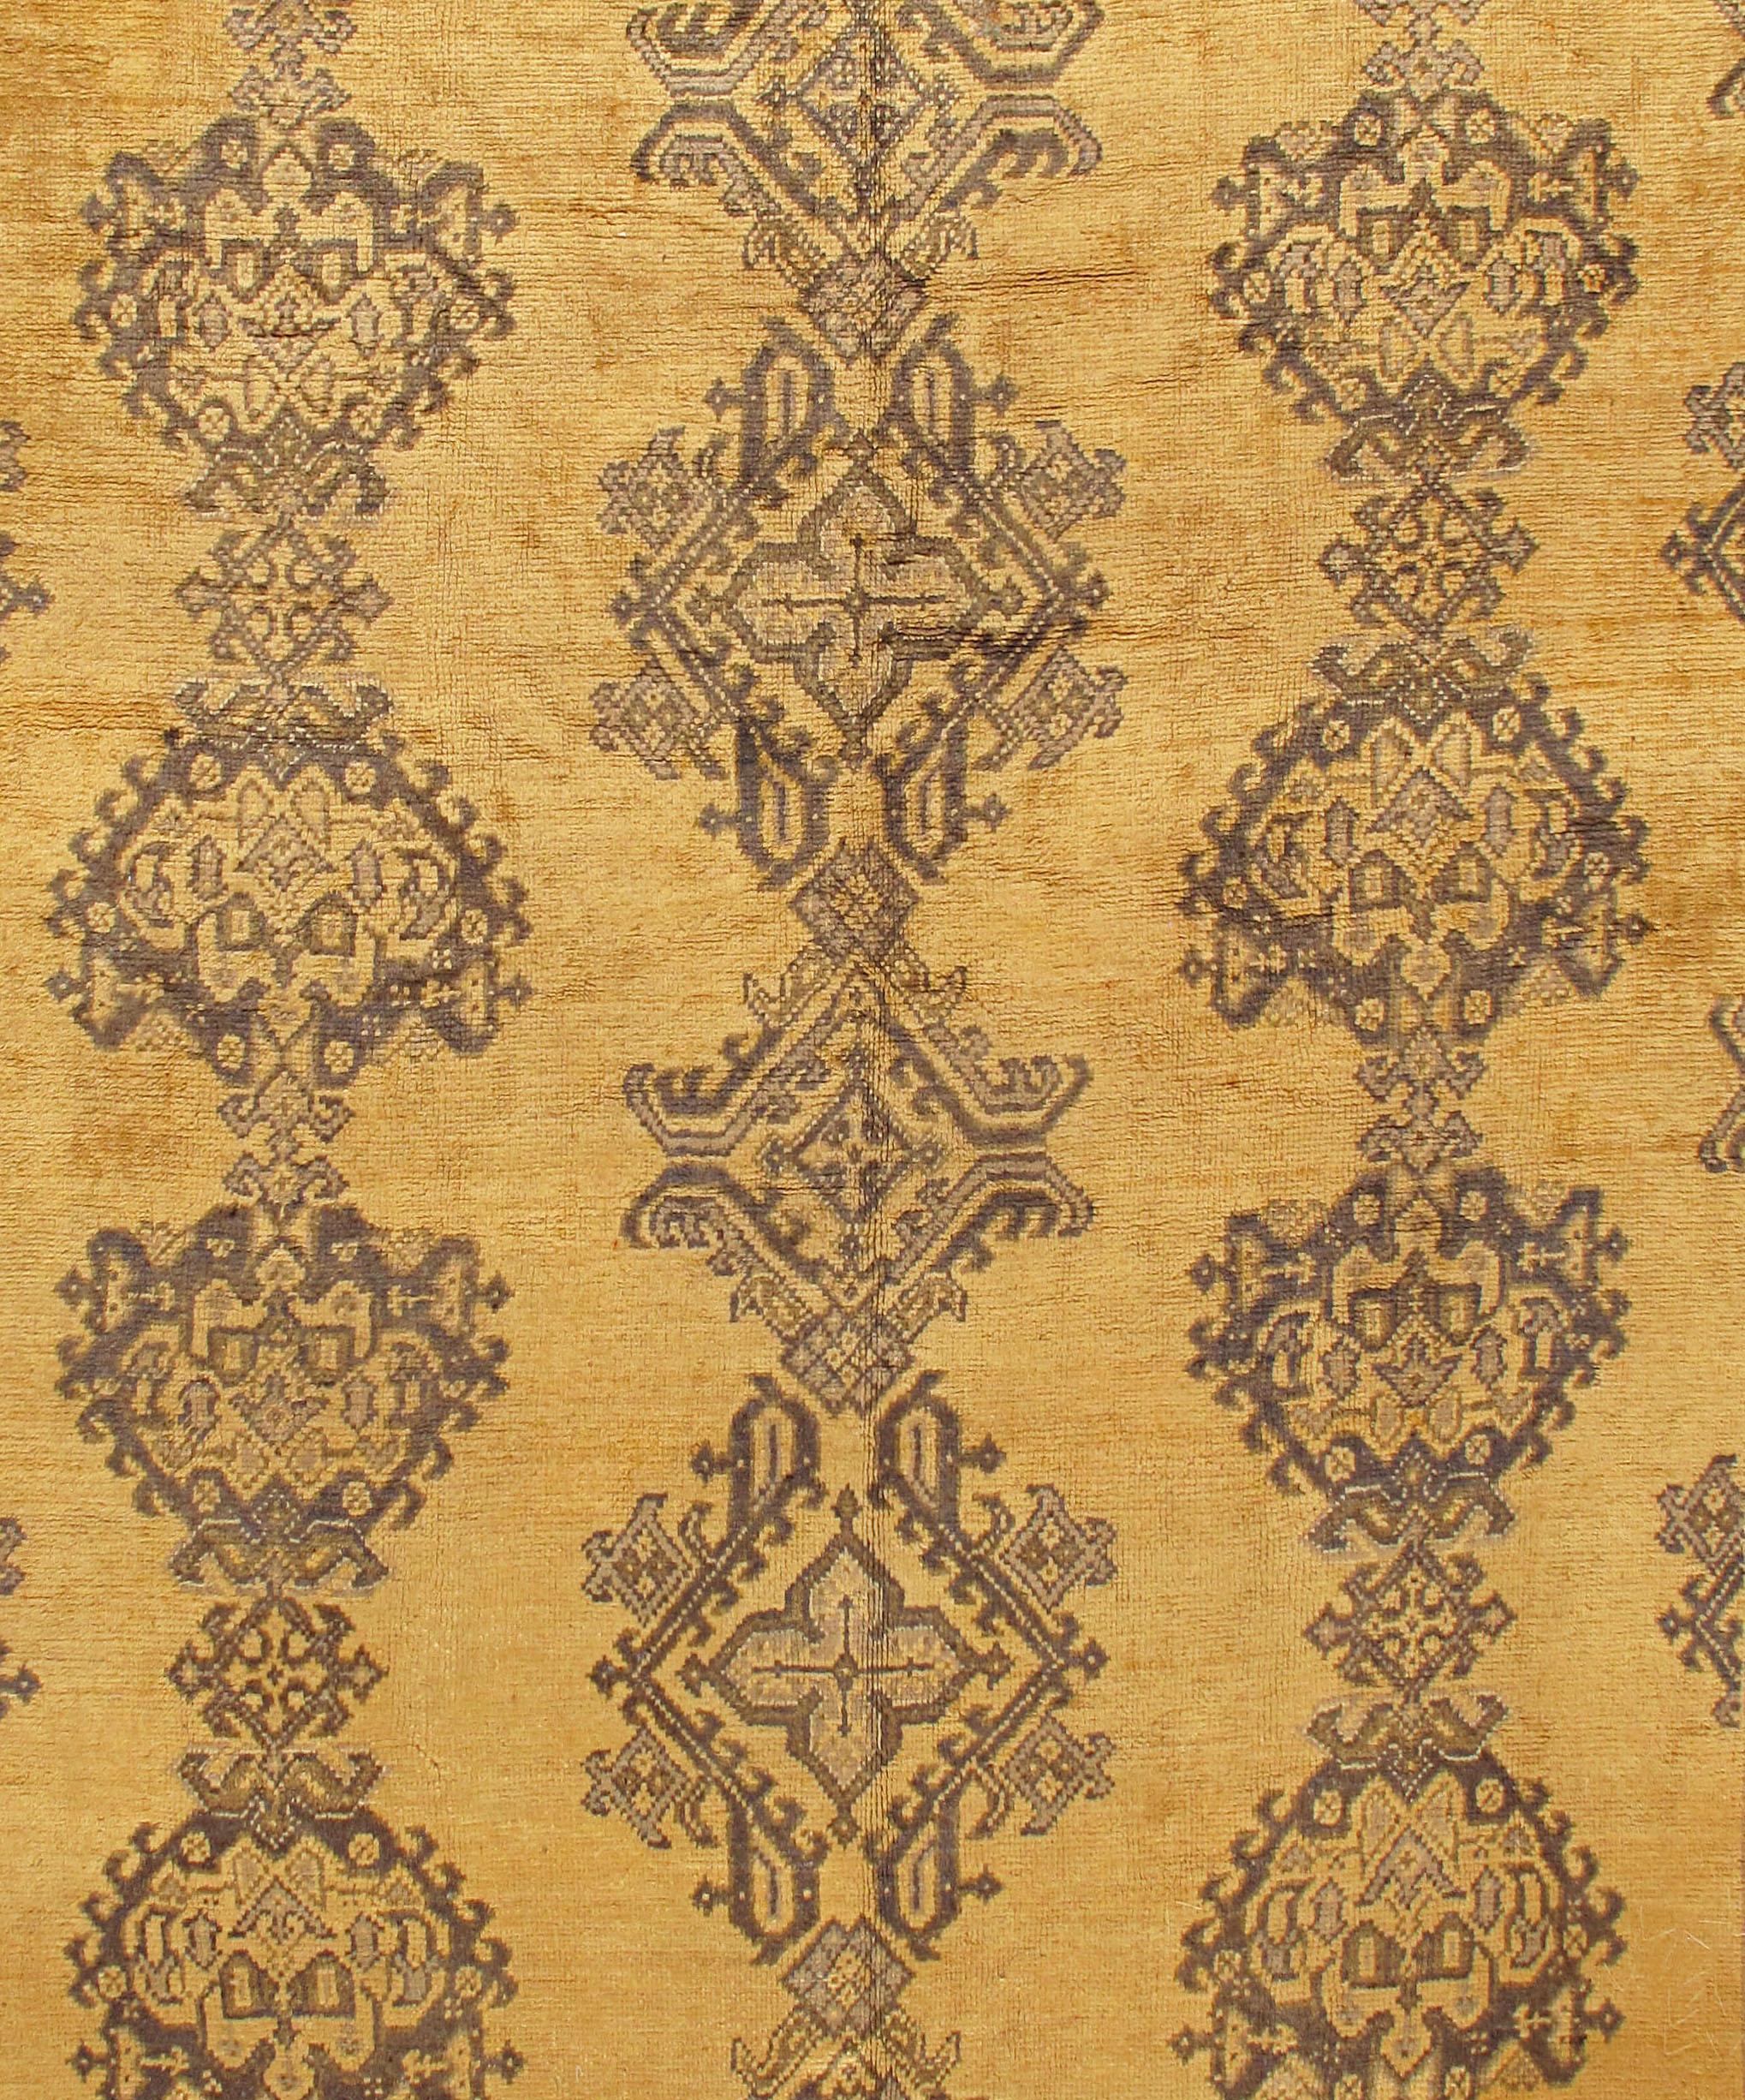 Tapis turc ancien de type Oushak, vers 1900. Taille : 9'4 x 11'. Tissé à la main en Turquie où le tissage de tapis est une culture plutôt qu'un commerce. Les tapis d'Oushak sont connus pour la haute qualité de leur laine, leurs beaux motifs et leurs